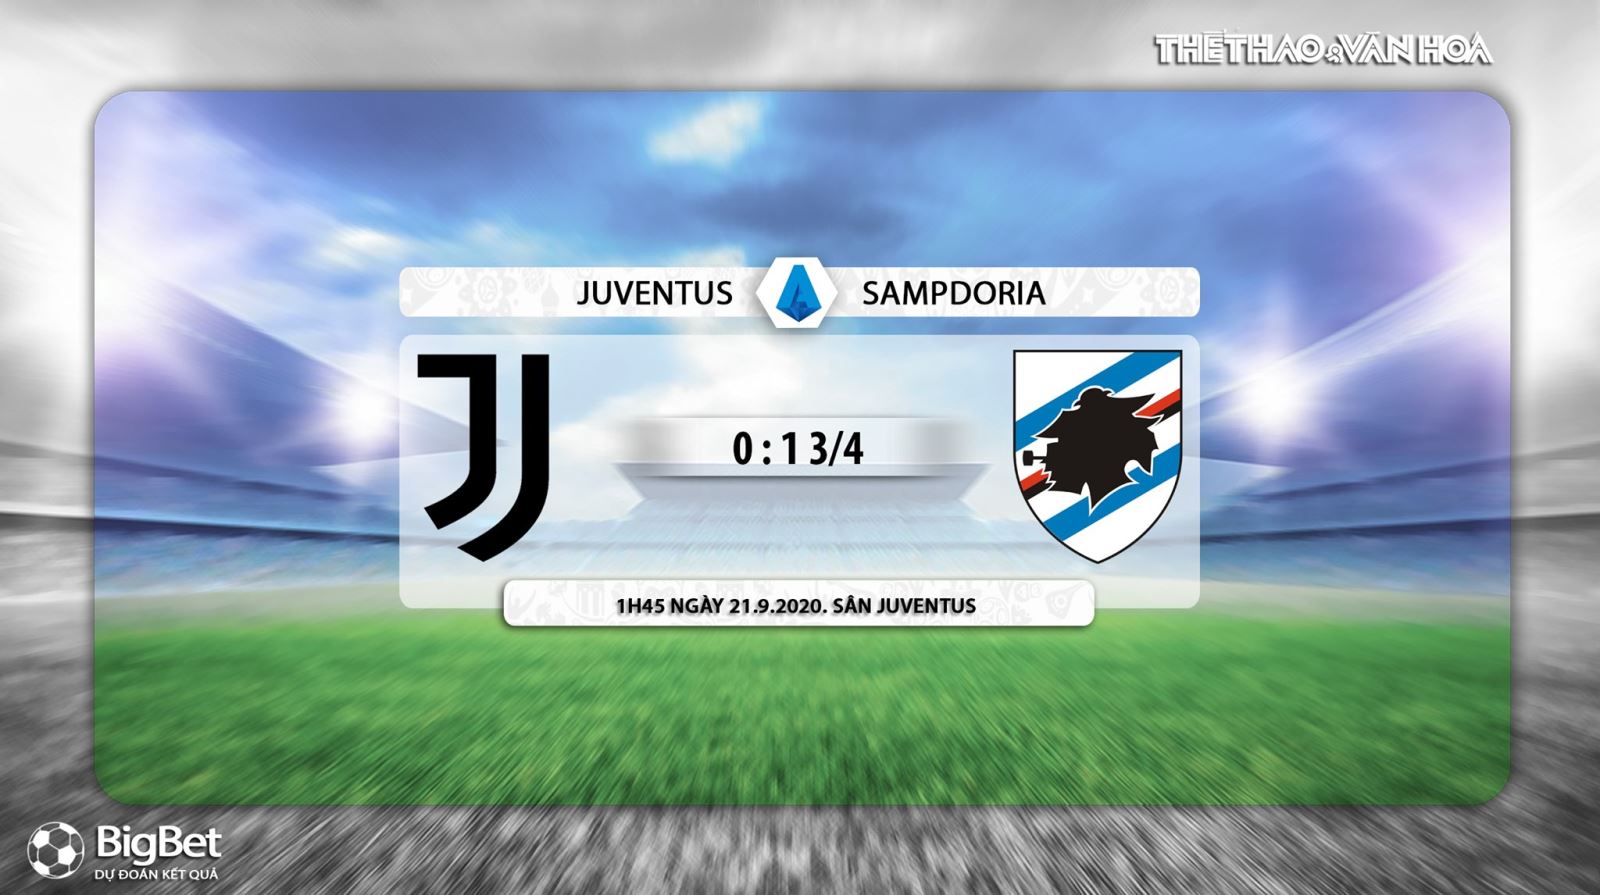 Juventus vs Sampdoria, nhận định bóng đá, kèo bóng đá, kèo thơm, kèo Juventus vs Sampdoria, nhận định bóng đá Juventus vs Sampdoria, nhận định Juventus vs Sampdoria, dự đoán Juventus vs Sampdoria